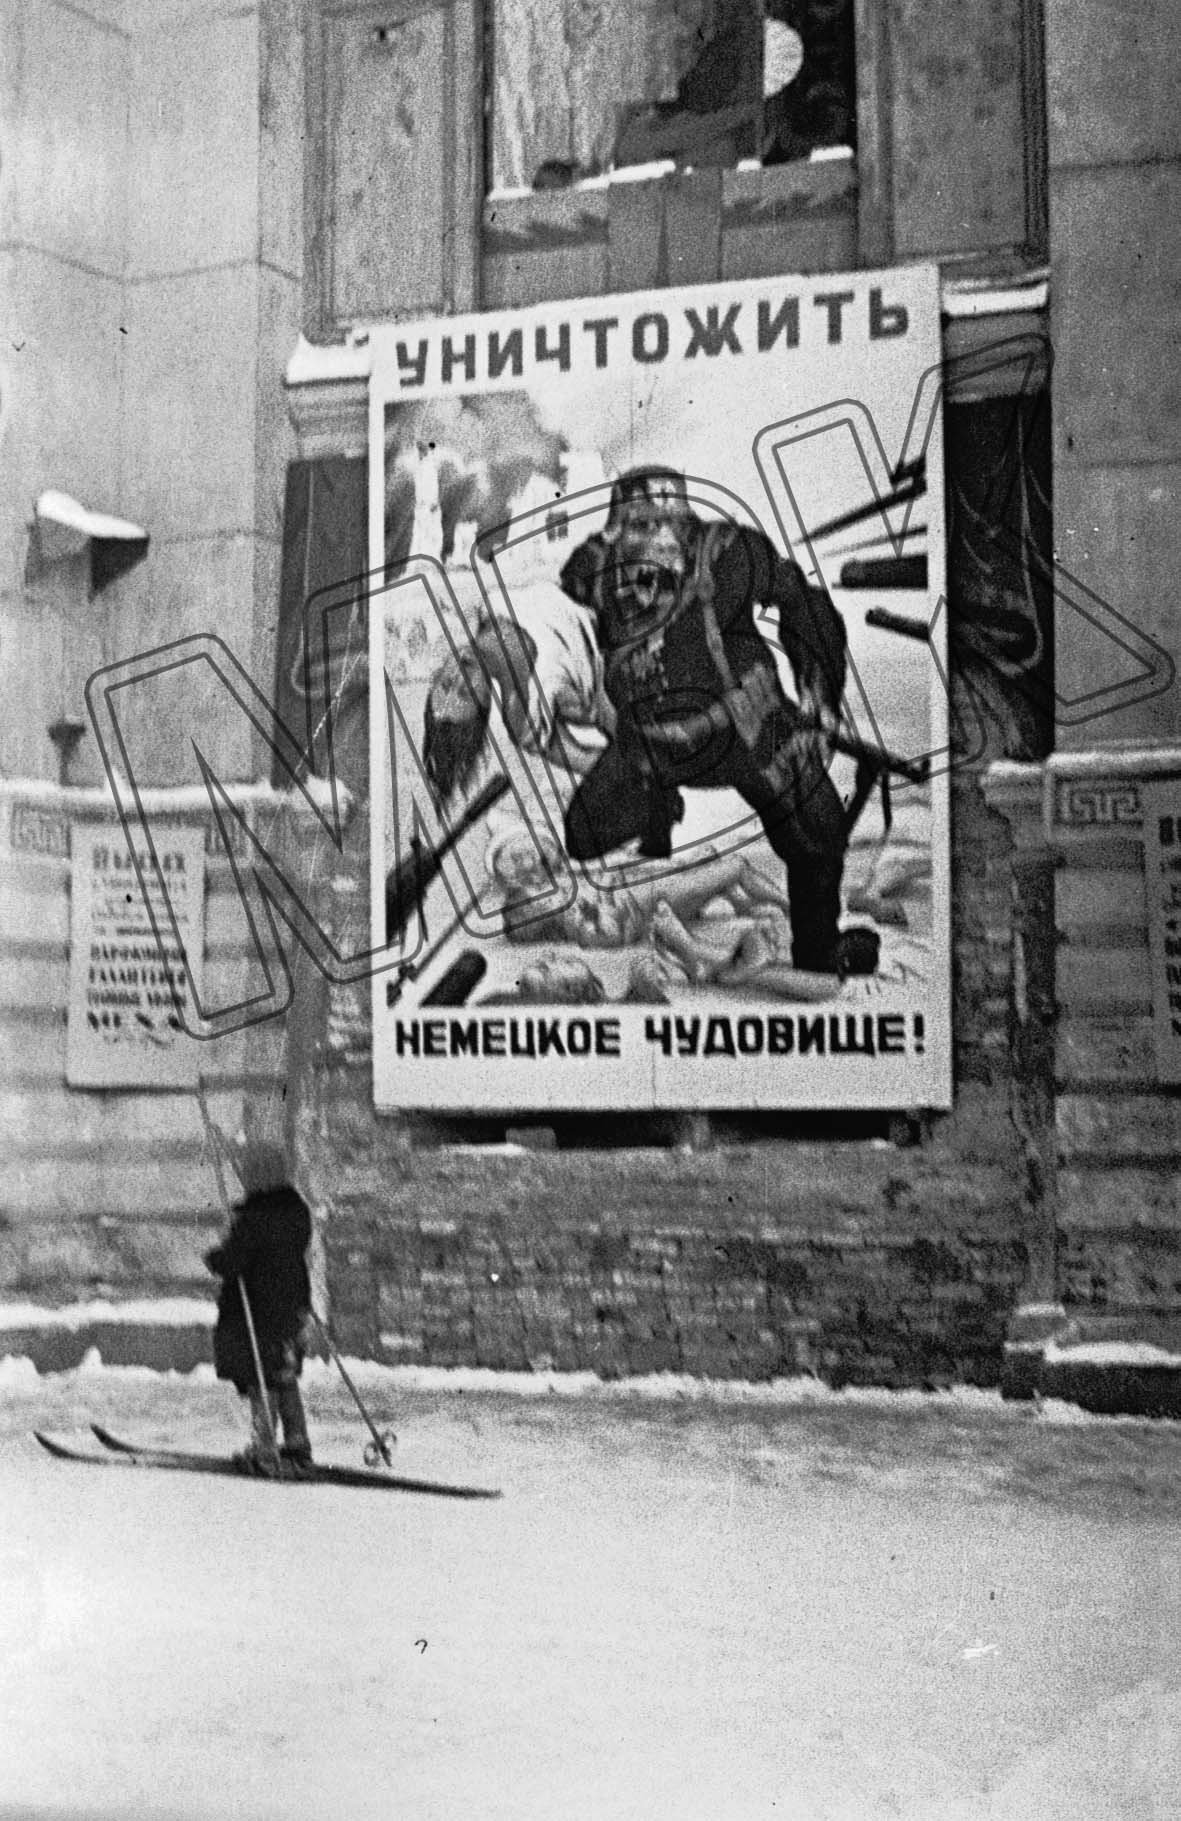 Propagandaplakat am Newskij Prospekt, Leningrad, Winter 1941/1942 (Museum Berlin-Karlshorst RR-P)